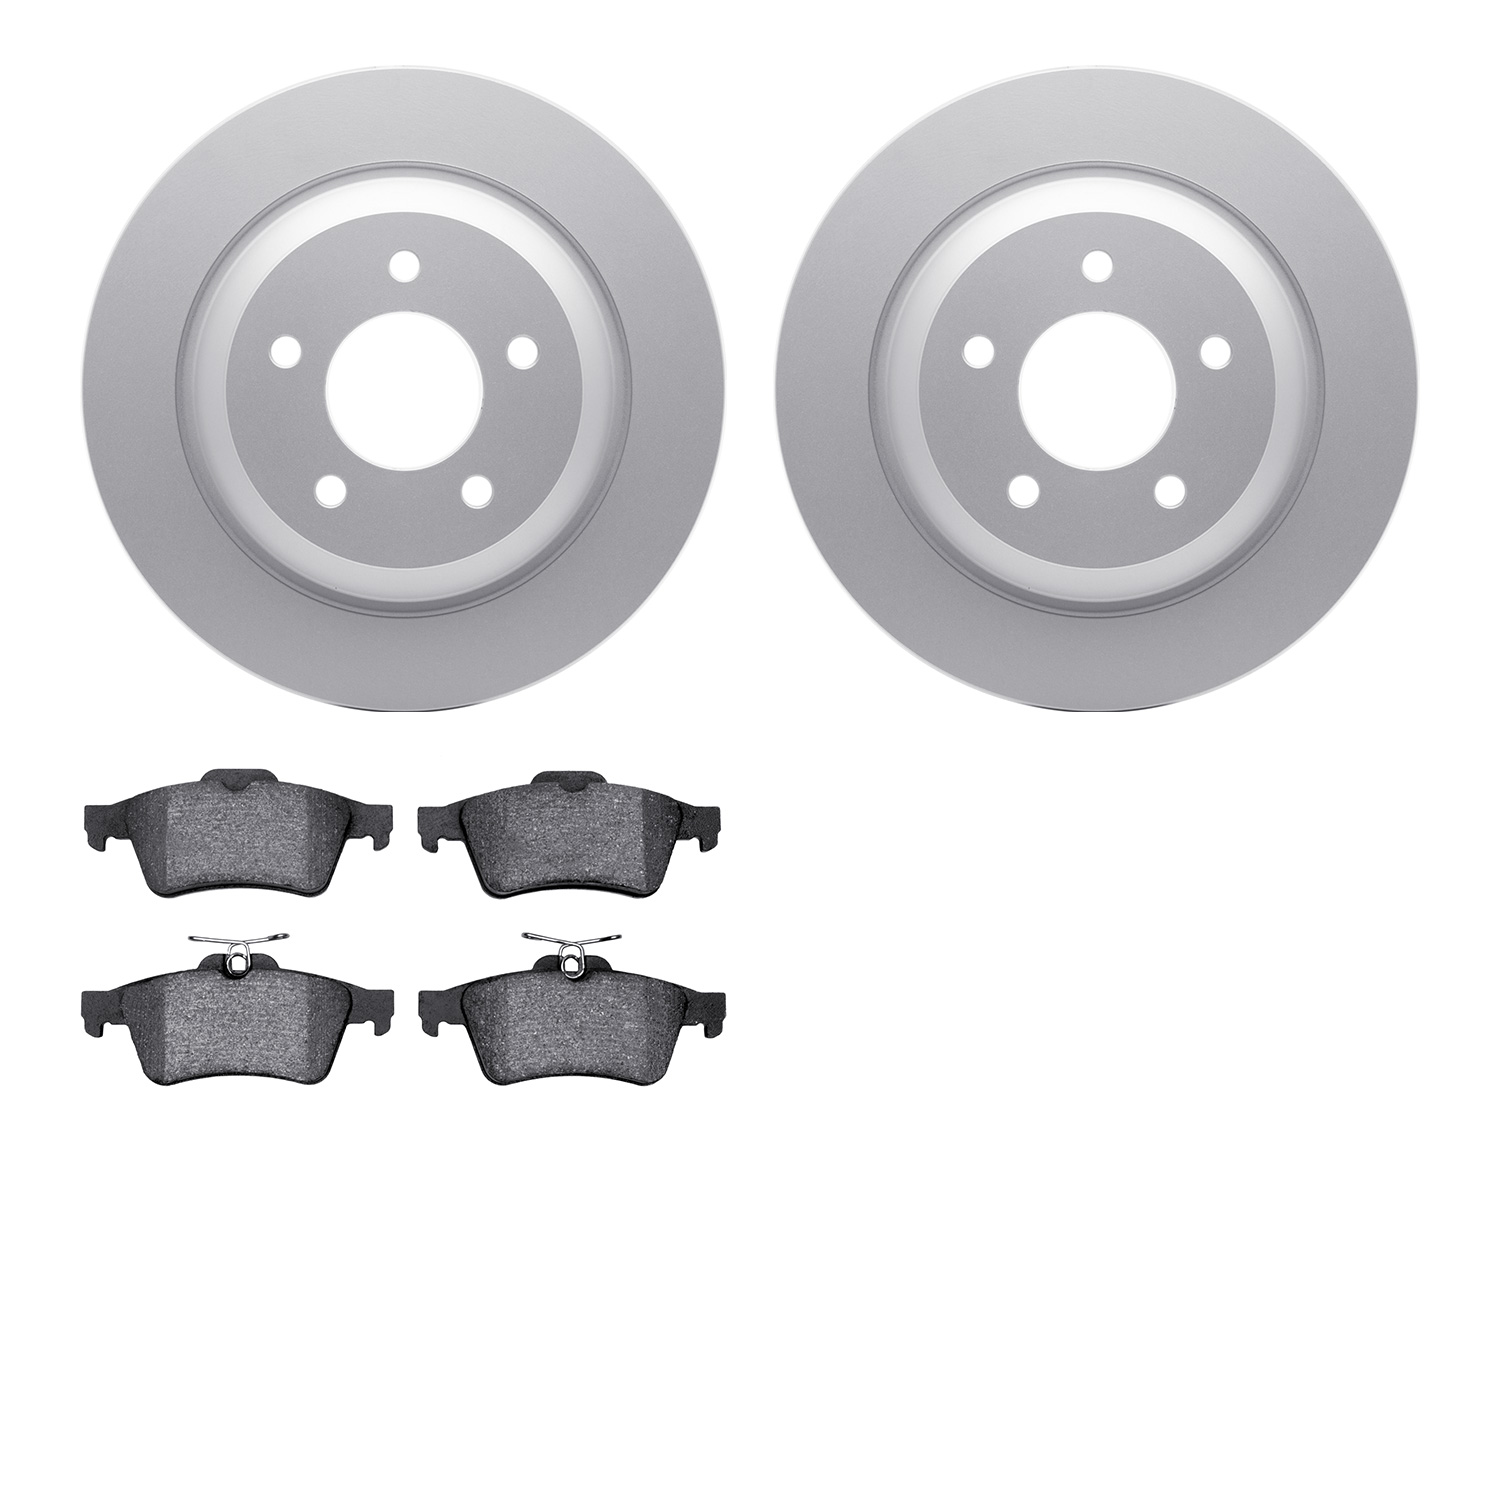 4602-80005 Geospec Brake Rotors w/5000 Euro Ceramic Brake Pads Kit, 2006-2015 Ford/Lincoln/Mercury/Mazda, Position: Rear